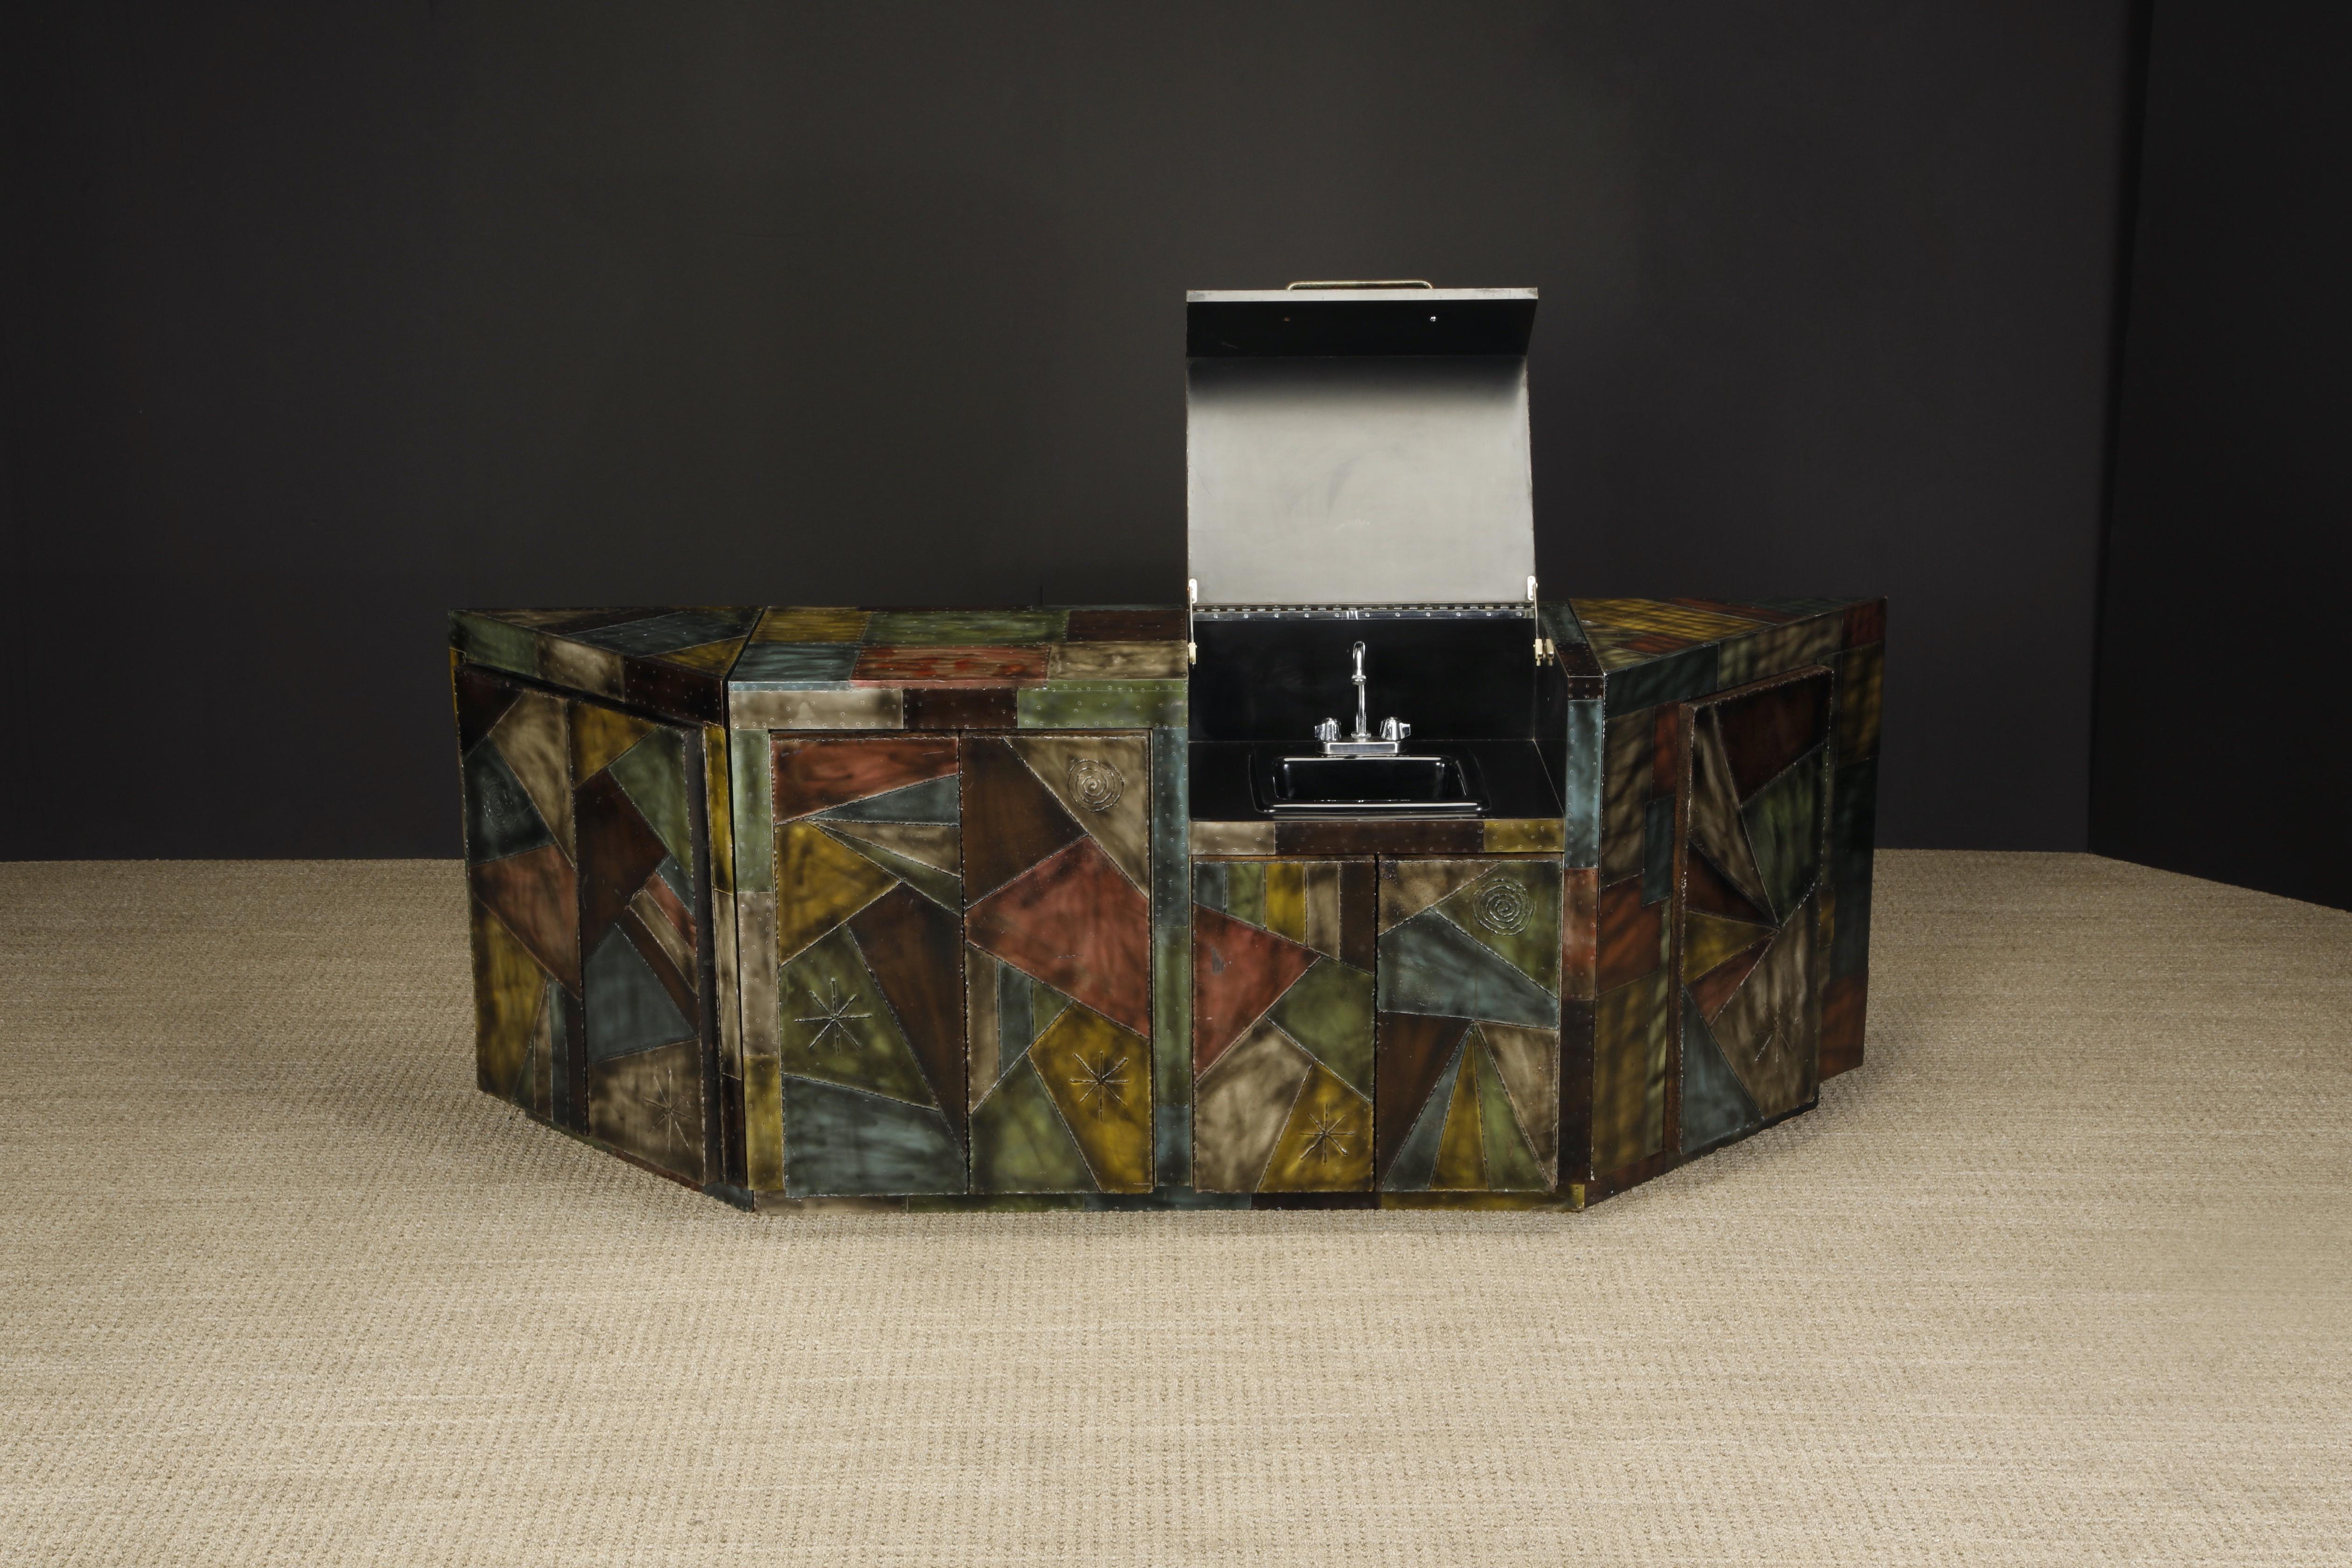 American Paul Evans Studio Wet Bar Cabinet with Hidden Sink, c 1970, Authenticated